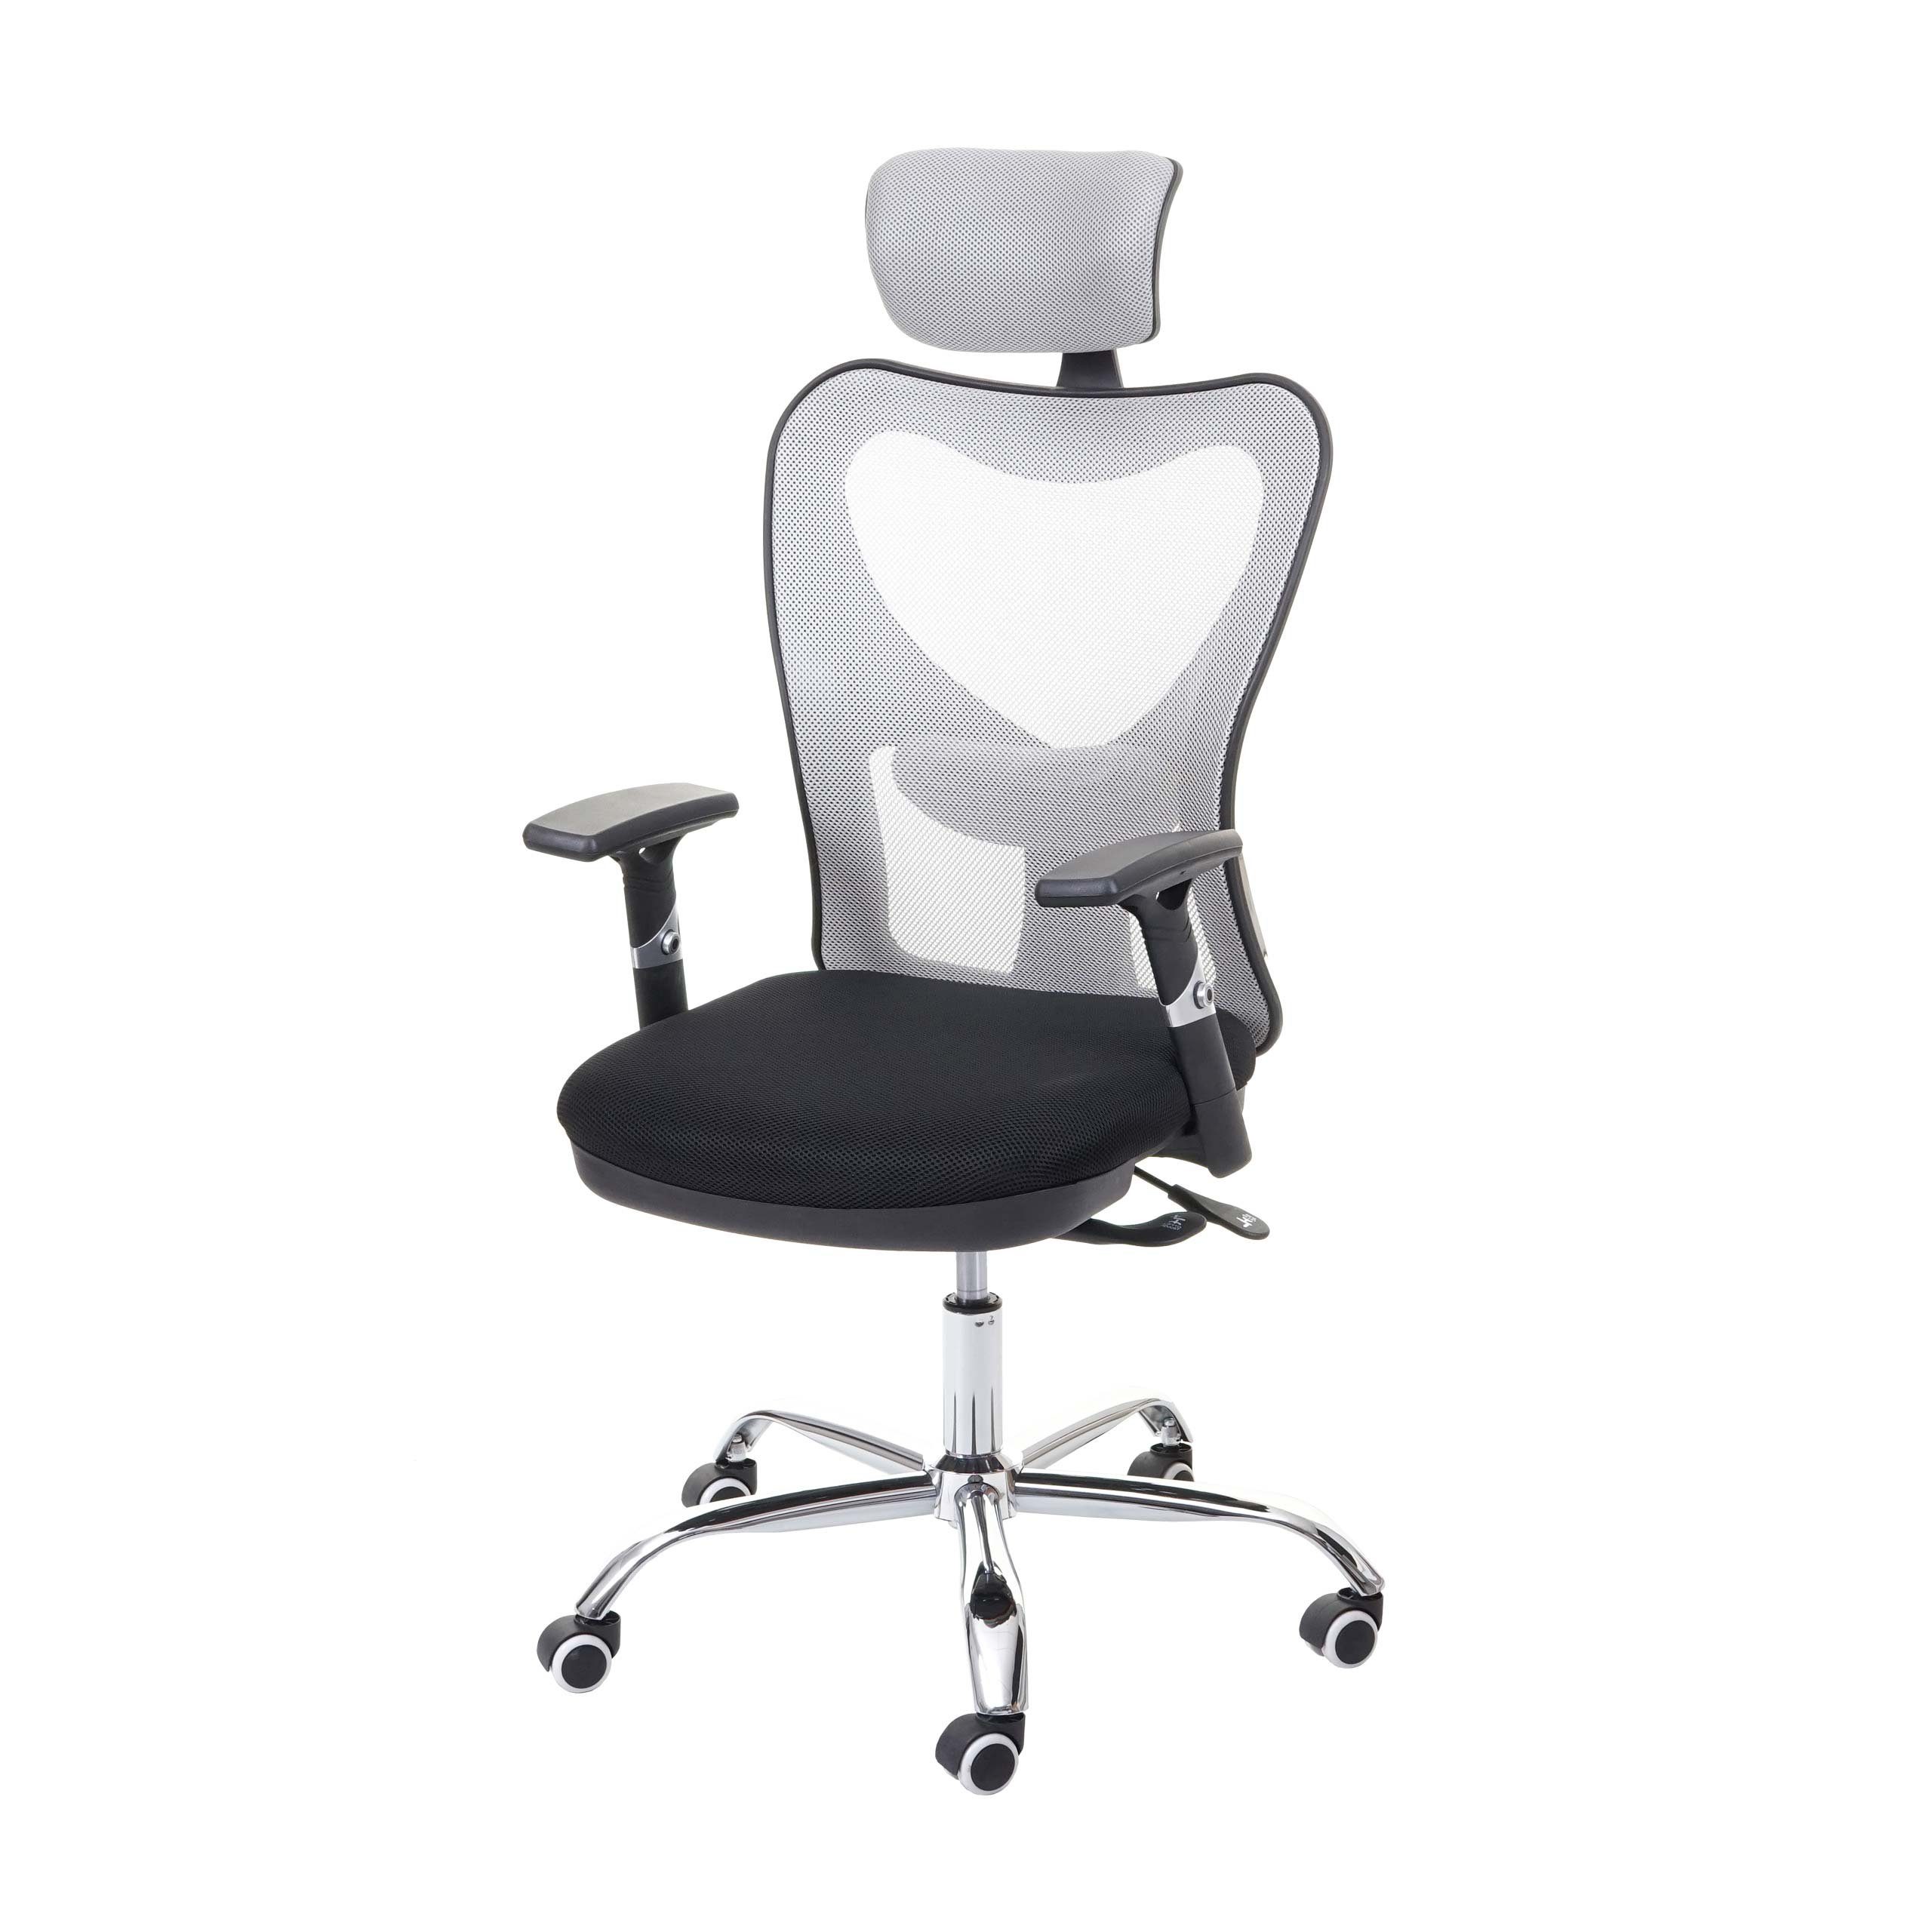 MCW Schreibtischstuhl MCW-F13, Armlehnen verstellbar, Sliding Funktion Sitzfläche, Netzbespannung schwarz/grau